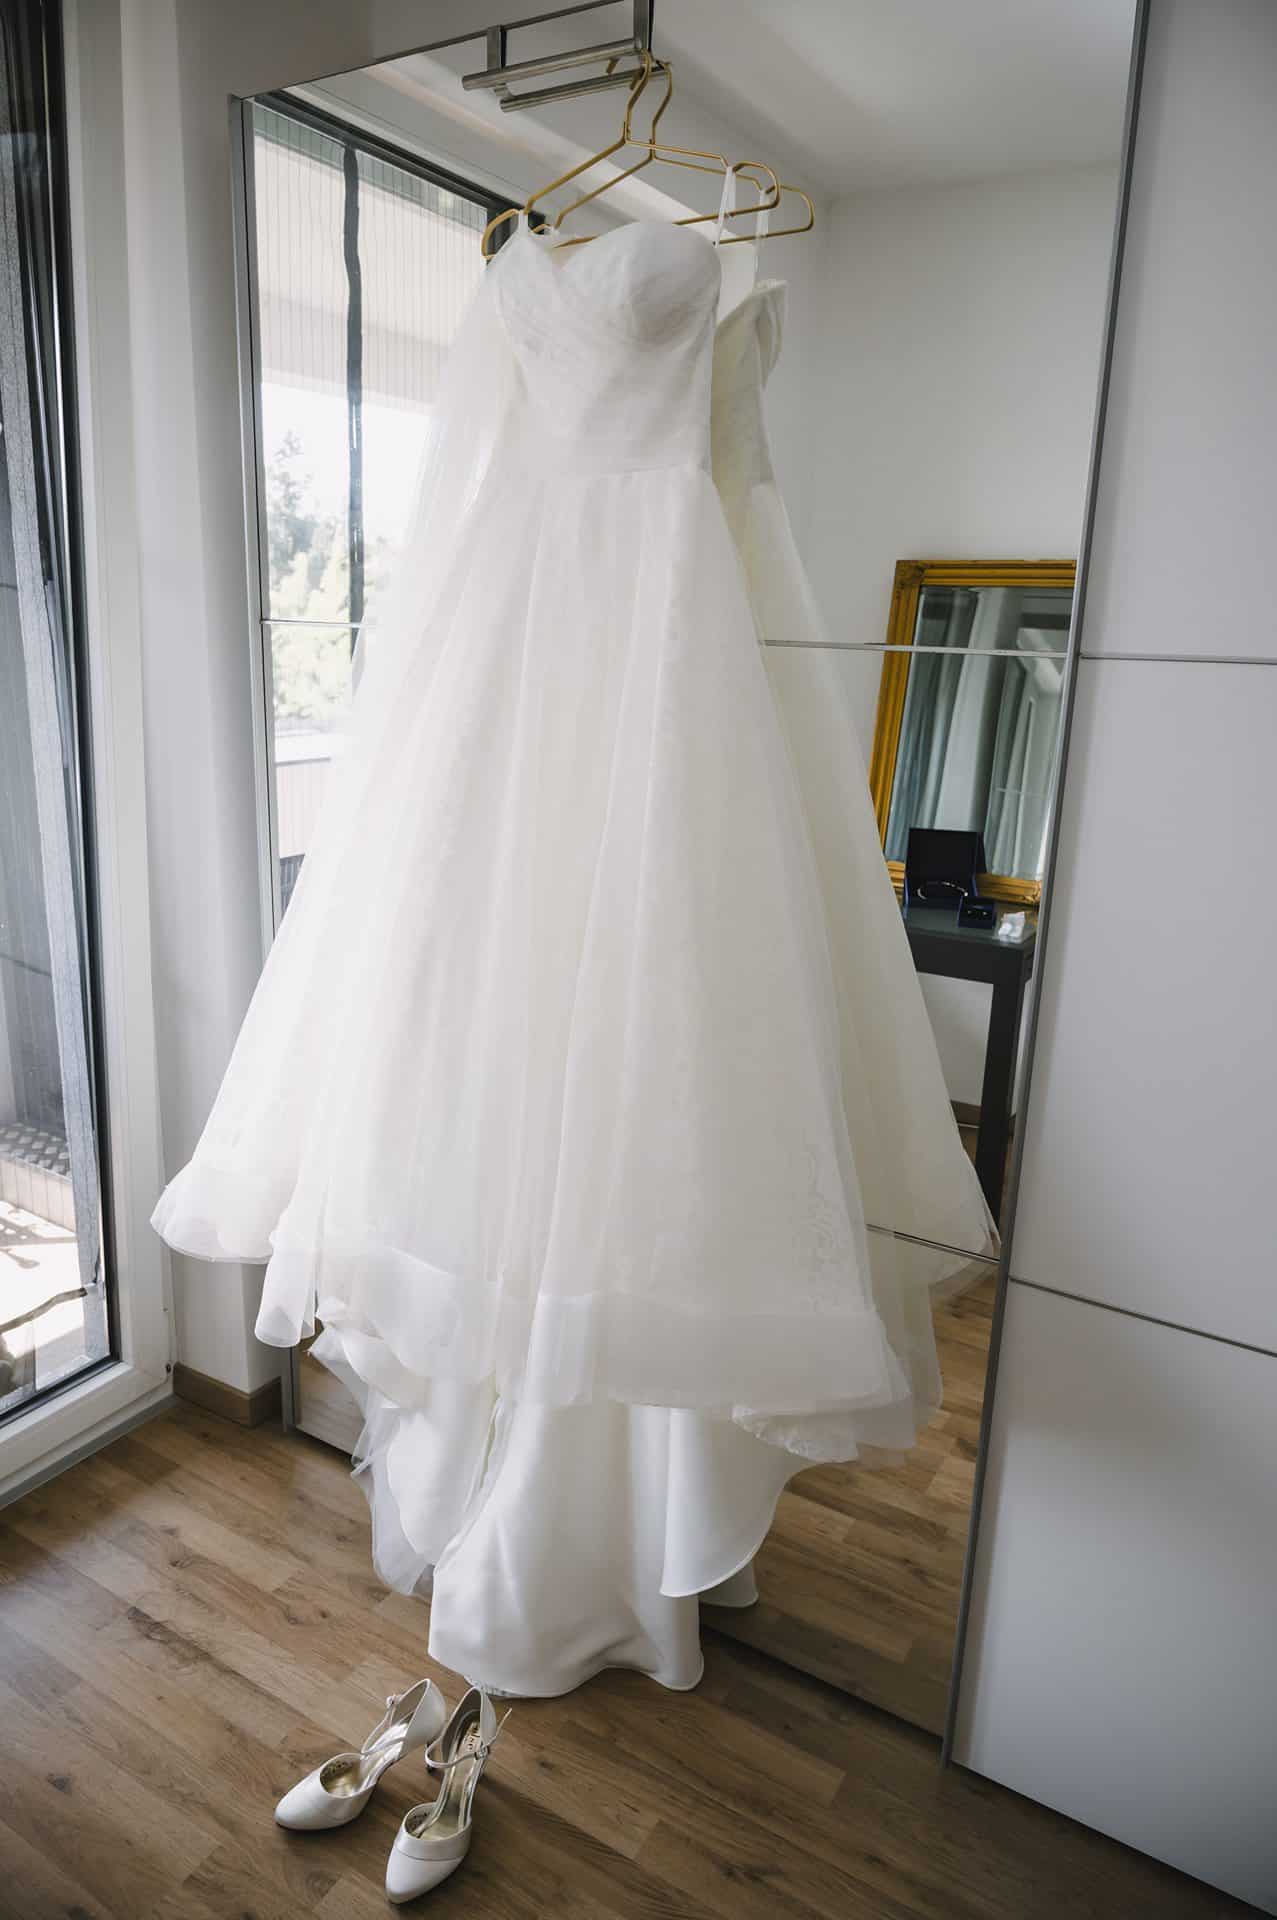 Vor einem Spiegel hängt ein Hochzeitskleid.